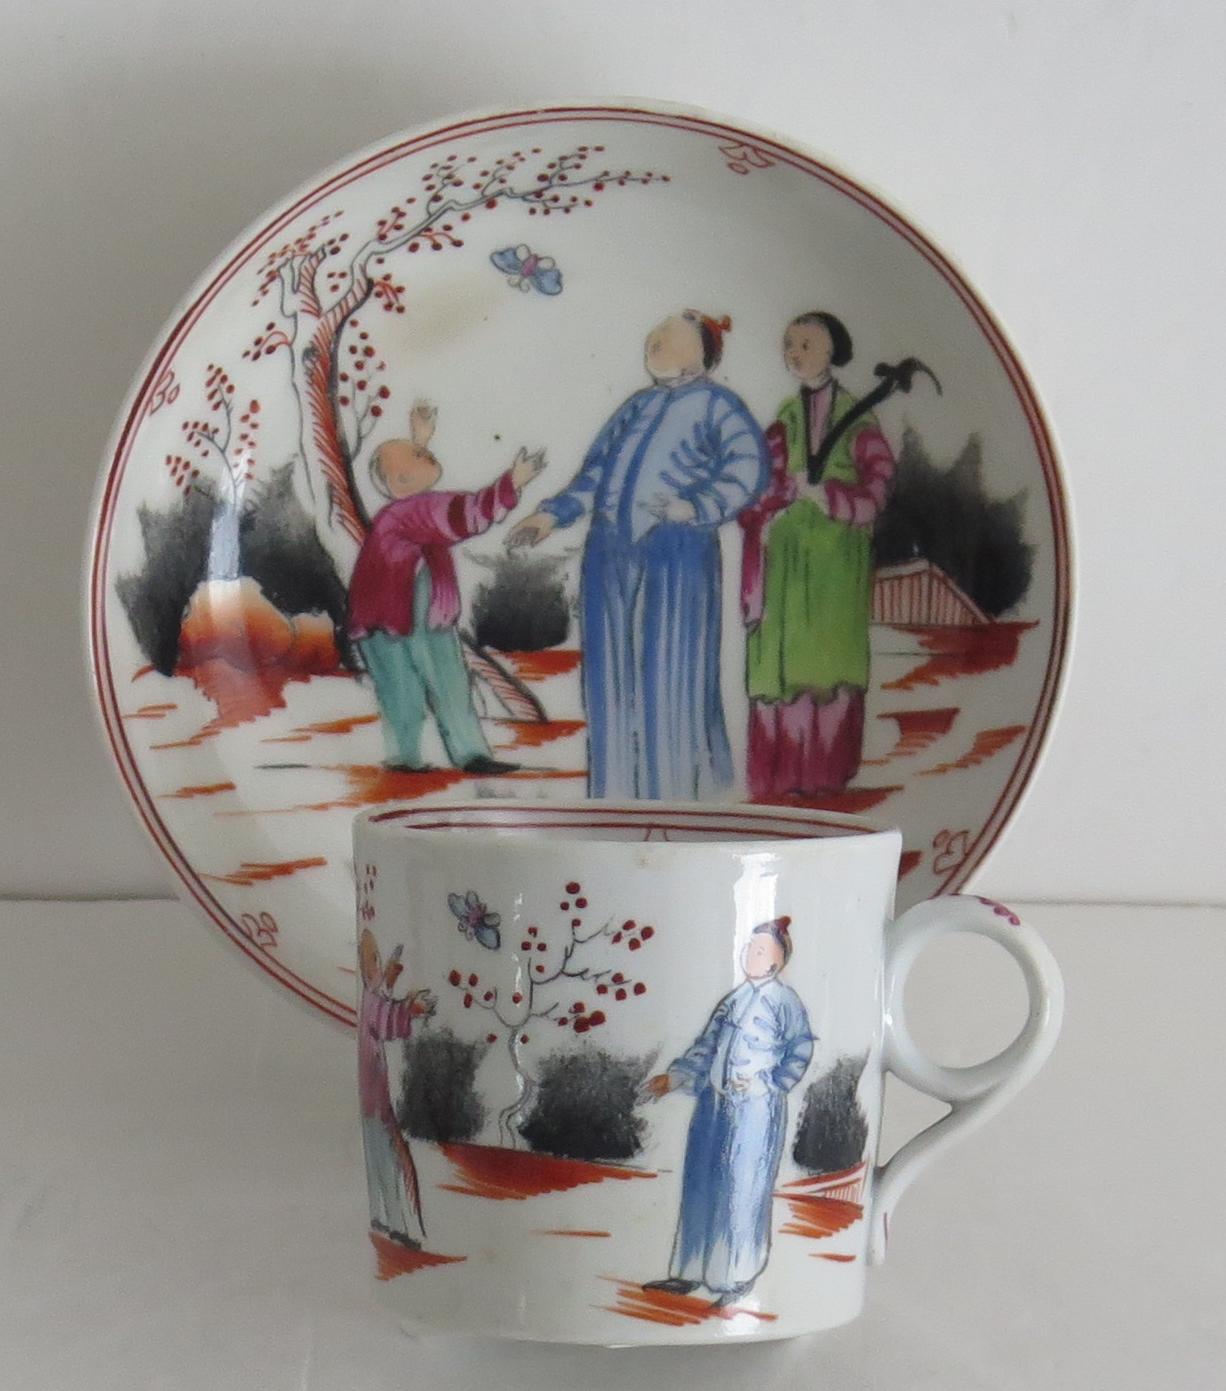 Il s'agit d'une boîte à café et d'un duo de soucoupes en porcelaine à pâte dure de New Hall, décorées à la main avec leur motif de figure chinoise numéro 421, datant de la période anglaise George III, vers 1795-1800.

La boîte à café a une poignée